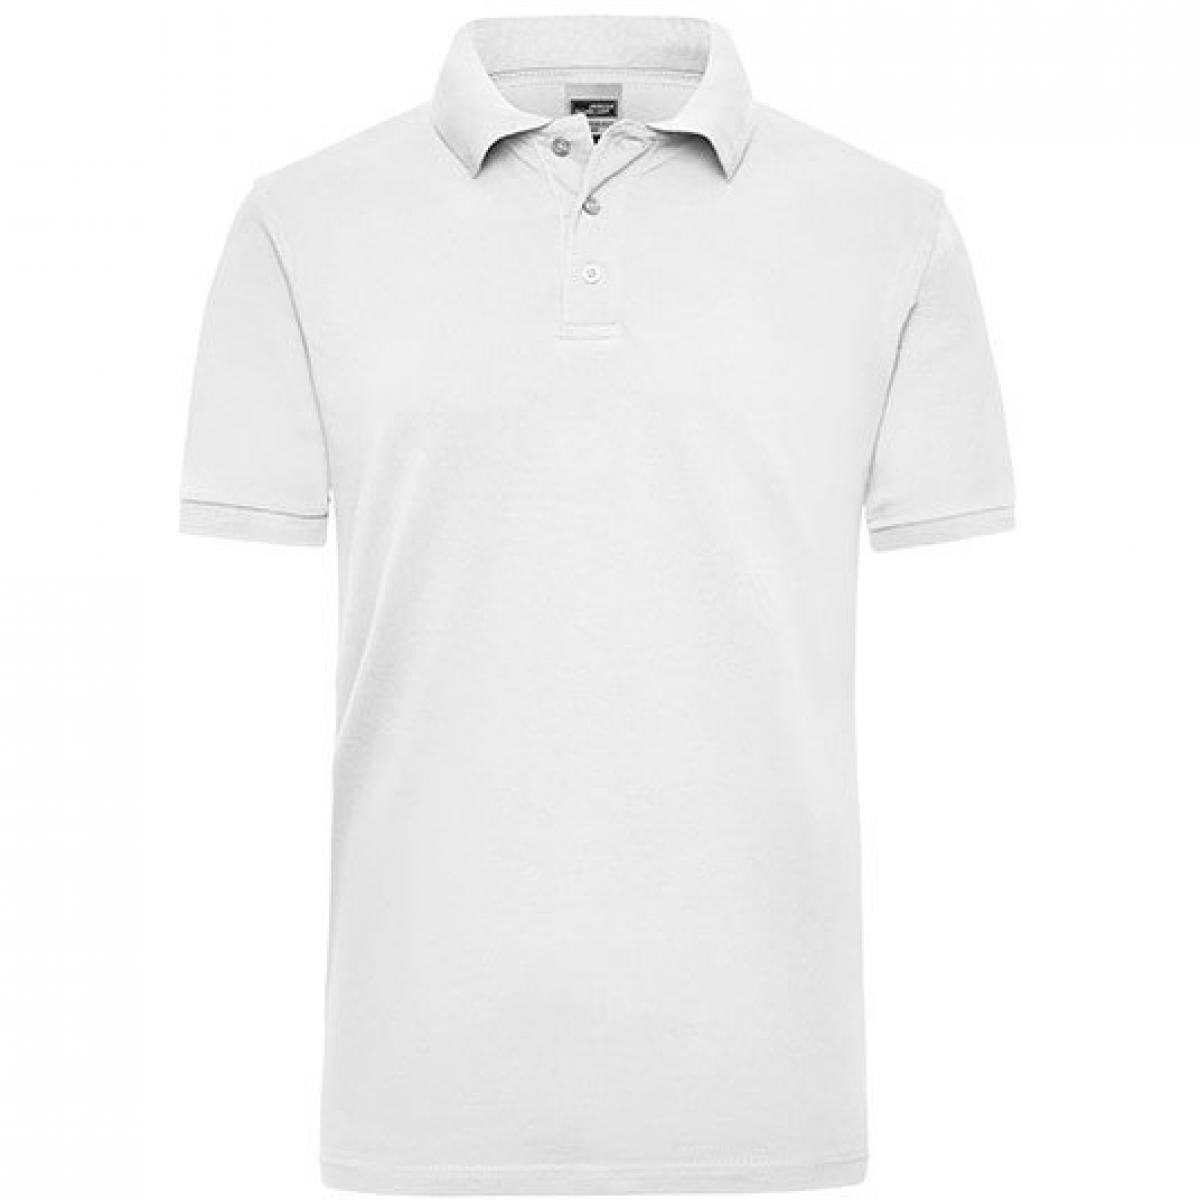 Hersteller: James+Nicholson Herstellernummer: JN 801 Artikelbezeichnung: Workwear Herren Poloshirt Men Farbe: White